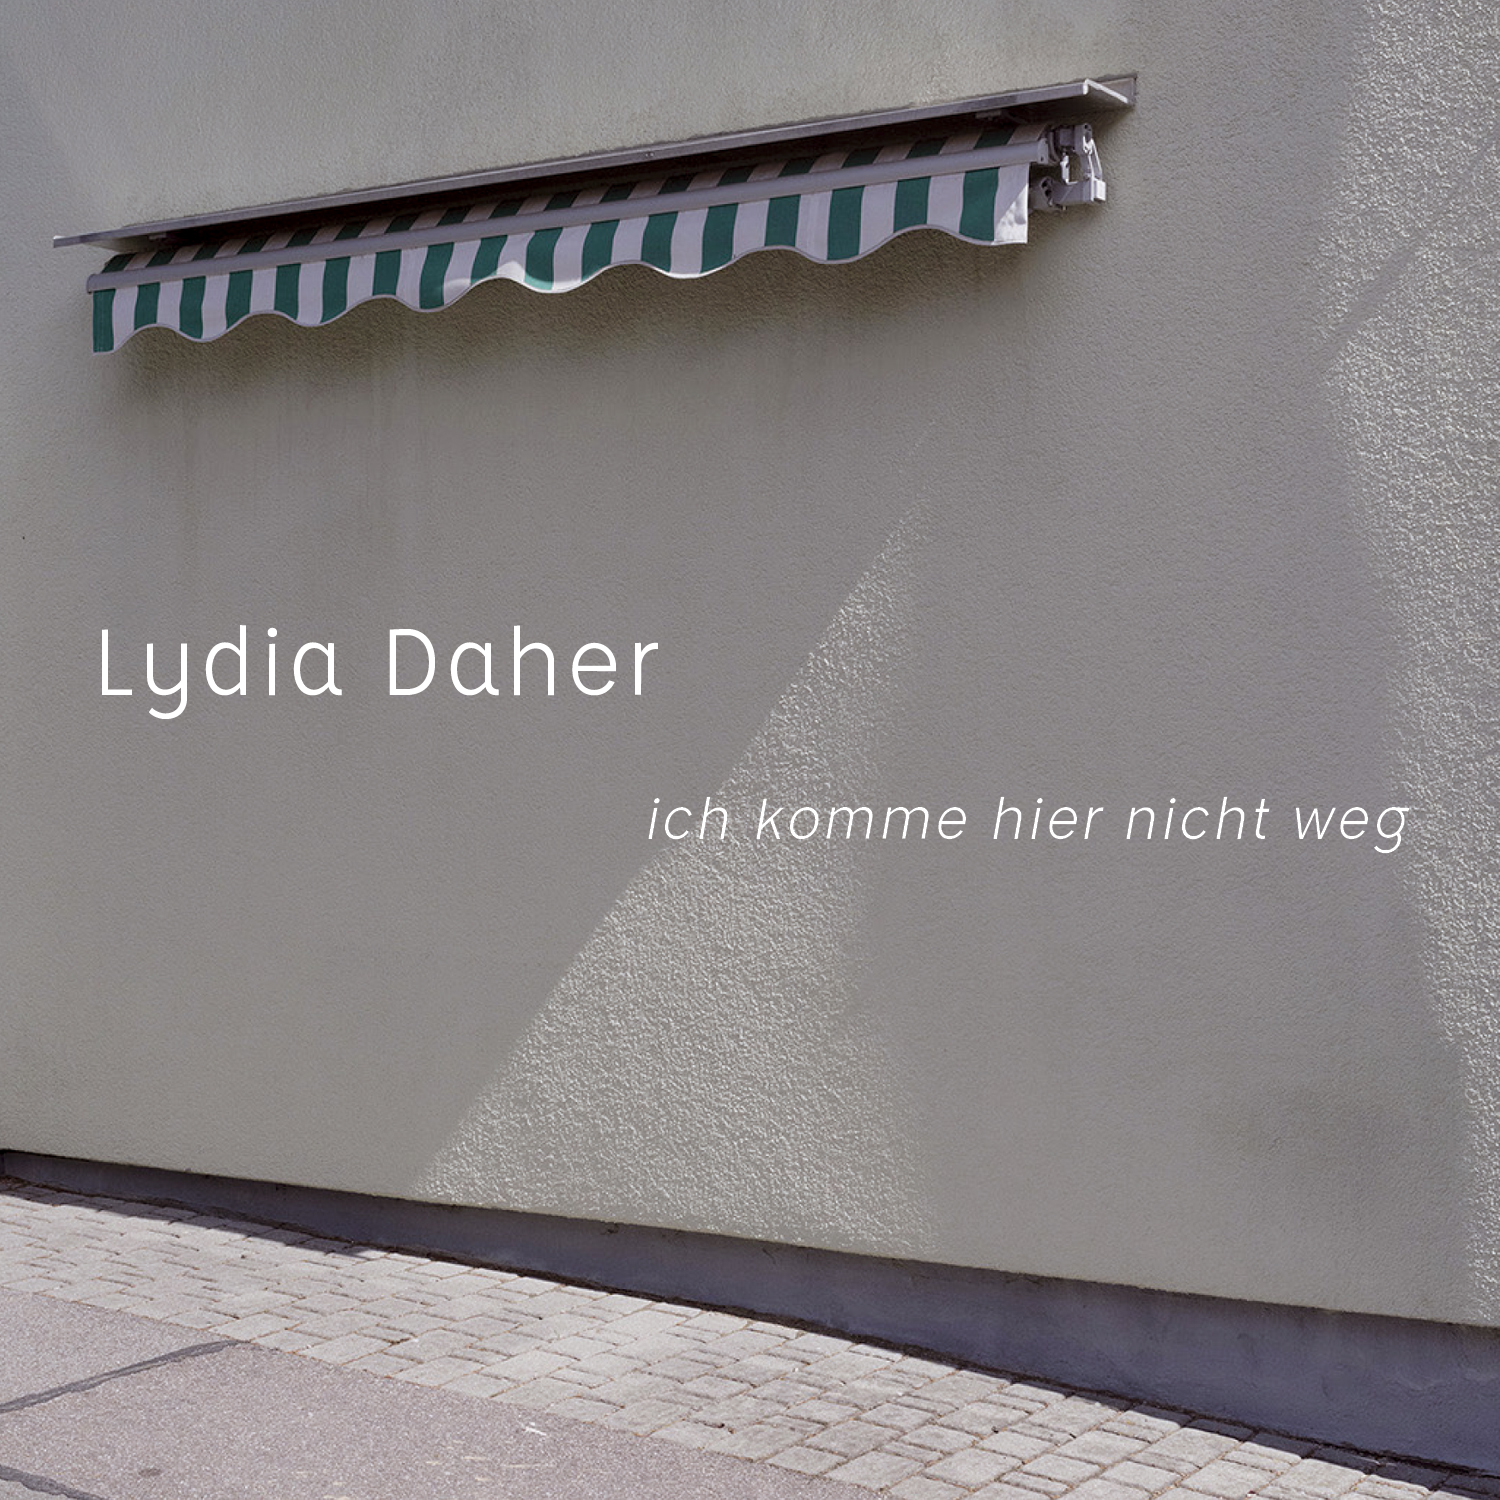 Lydia Daher Vorabsingle "Ich komme hier nicht weg" aus dem kommenden Album "Wir hatten grosses vor"